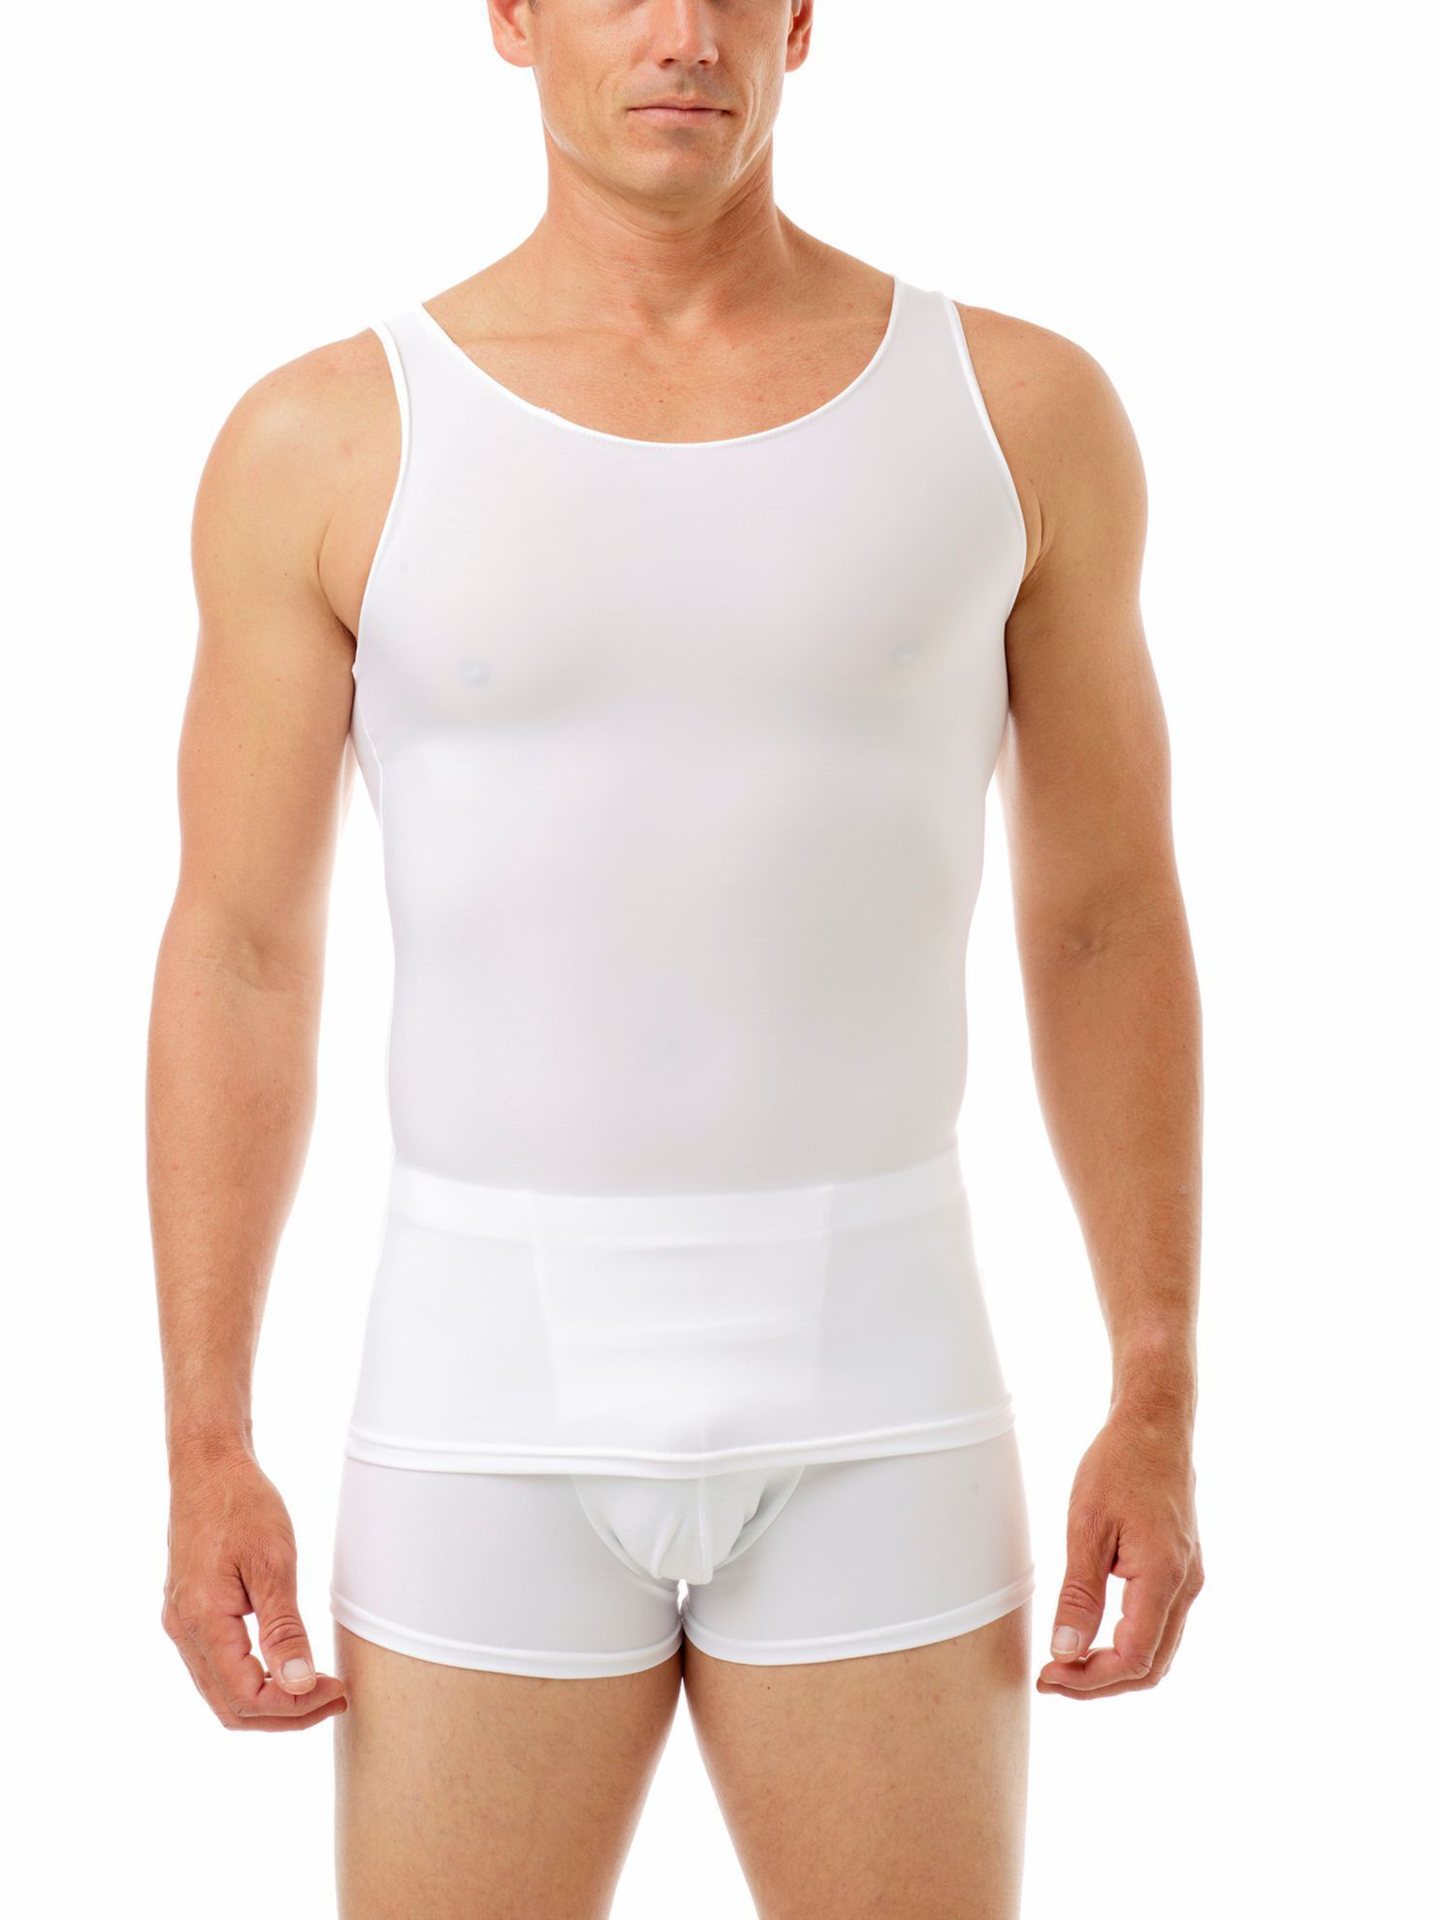 underworks compression shirt compression garments for men